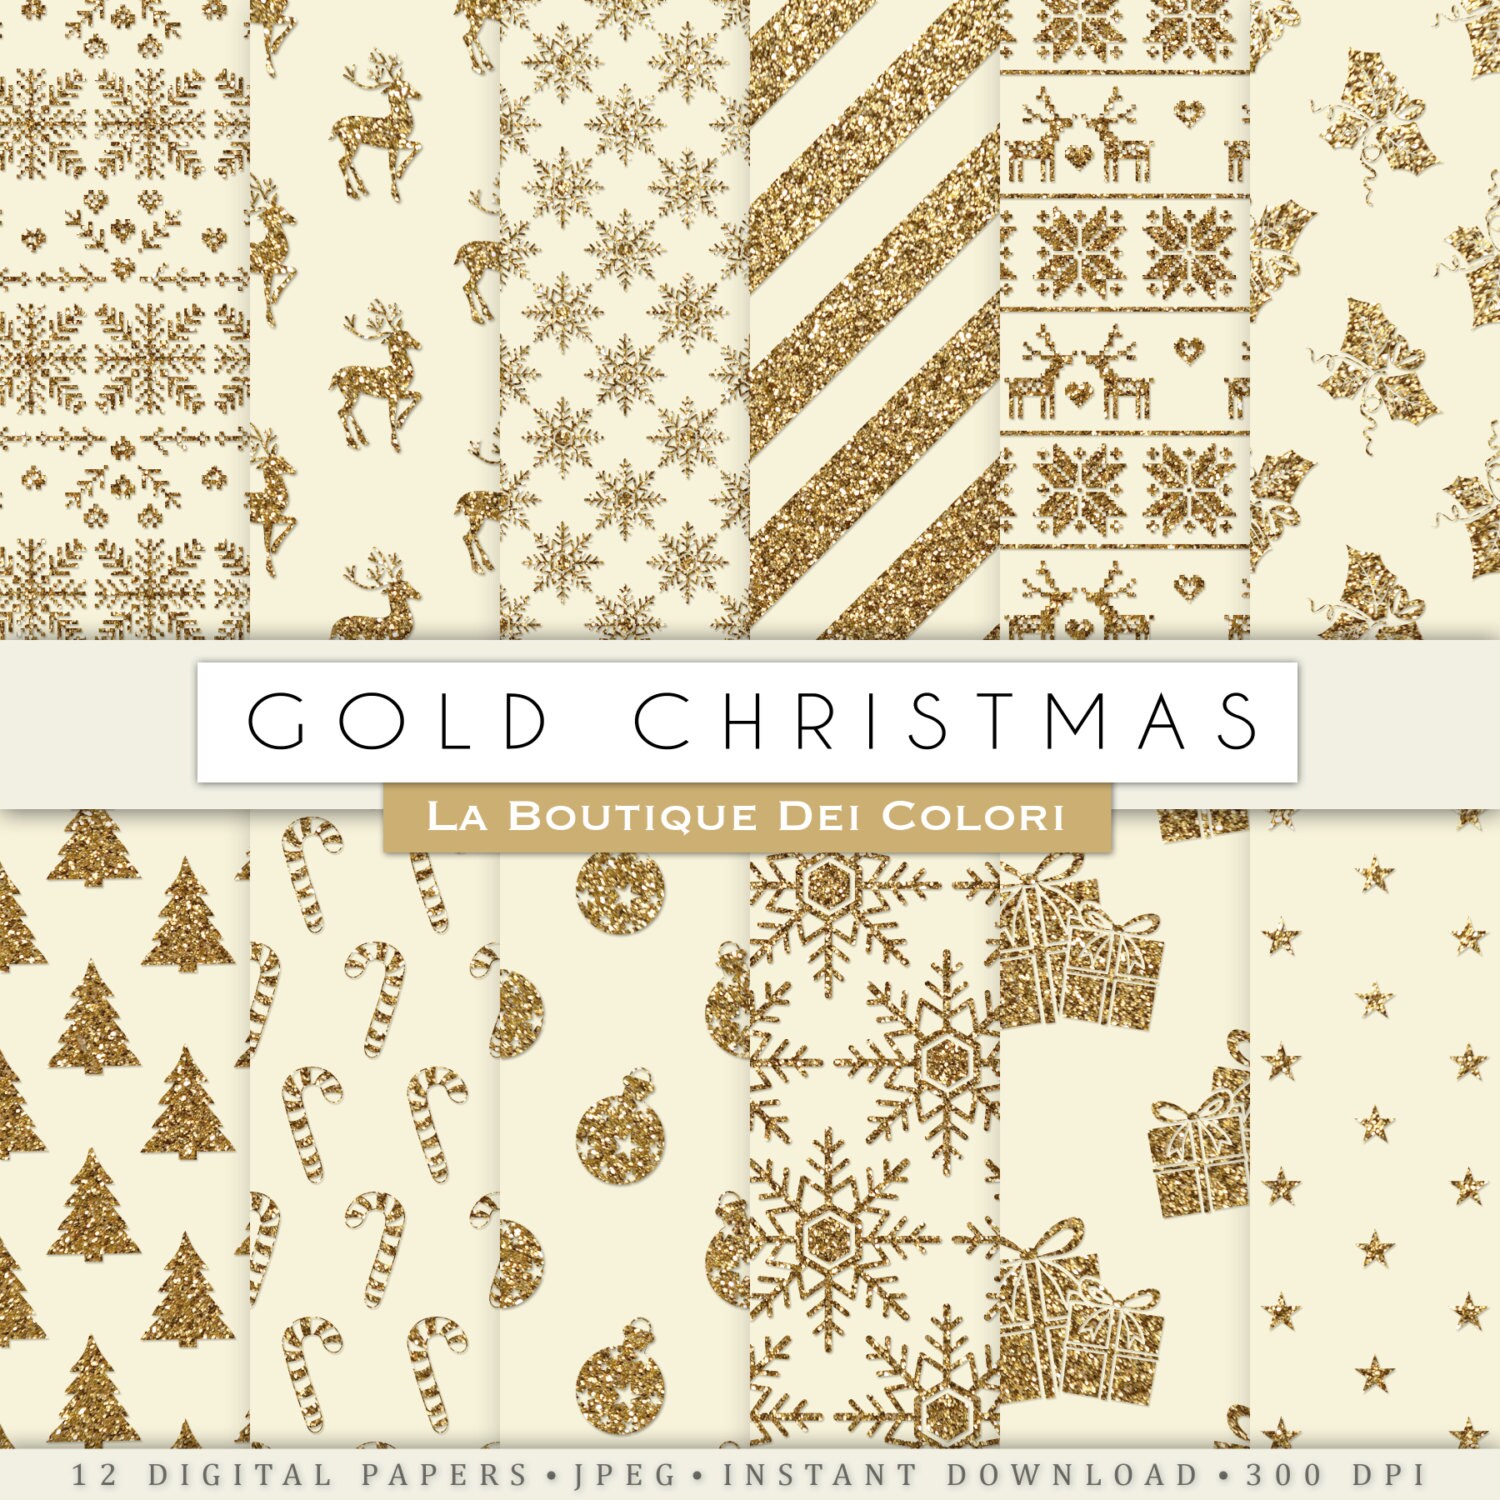 Giấy dán kỹ thuật số vàng cổ điển cho Giáng sinh sẽ đem đến không khí ấm áp và truyền thống cho mùa lễ hội này. Hãy xem hình ảnh để chiêm ngưỡng sự độc đáo và lộng lẫy của giấy dán này trên cây Giáng sinh của bạn.